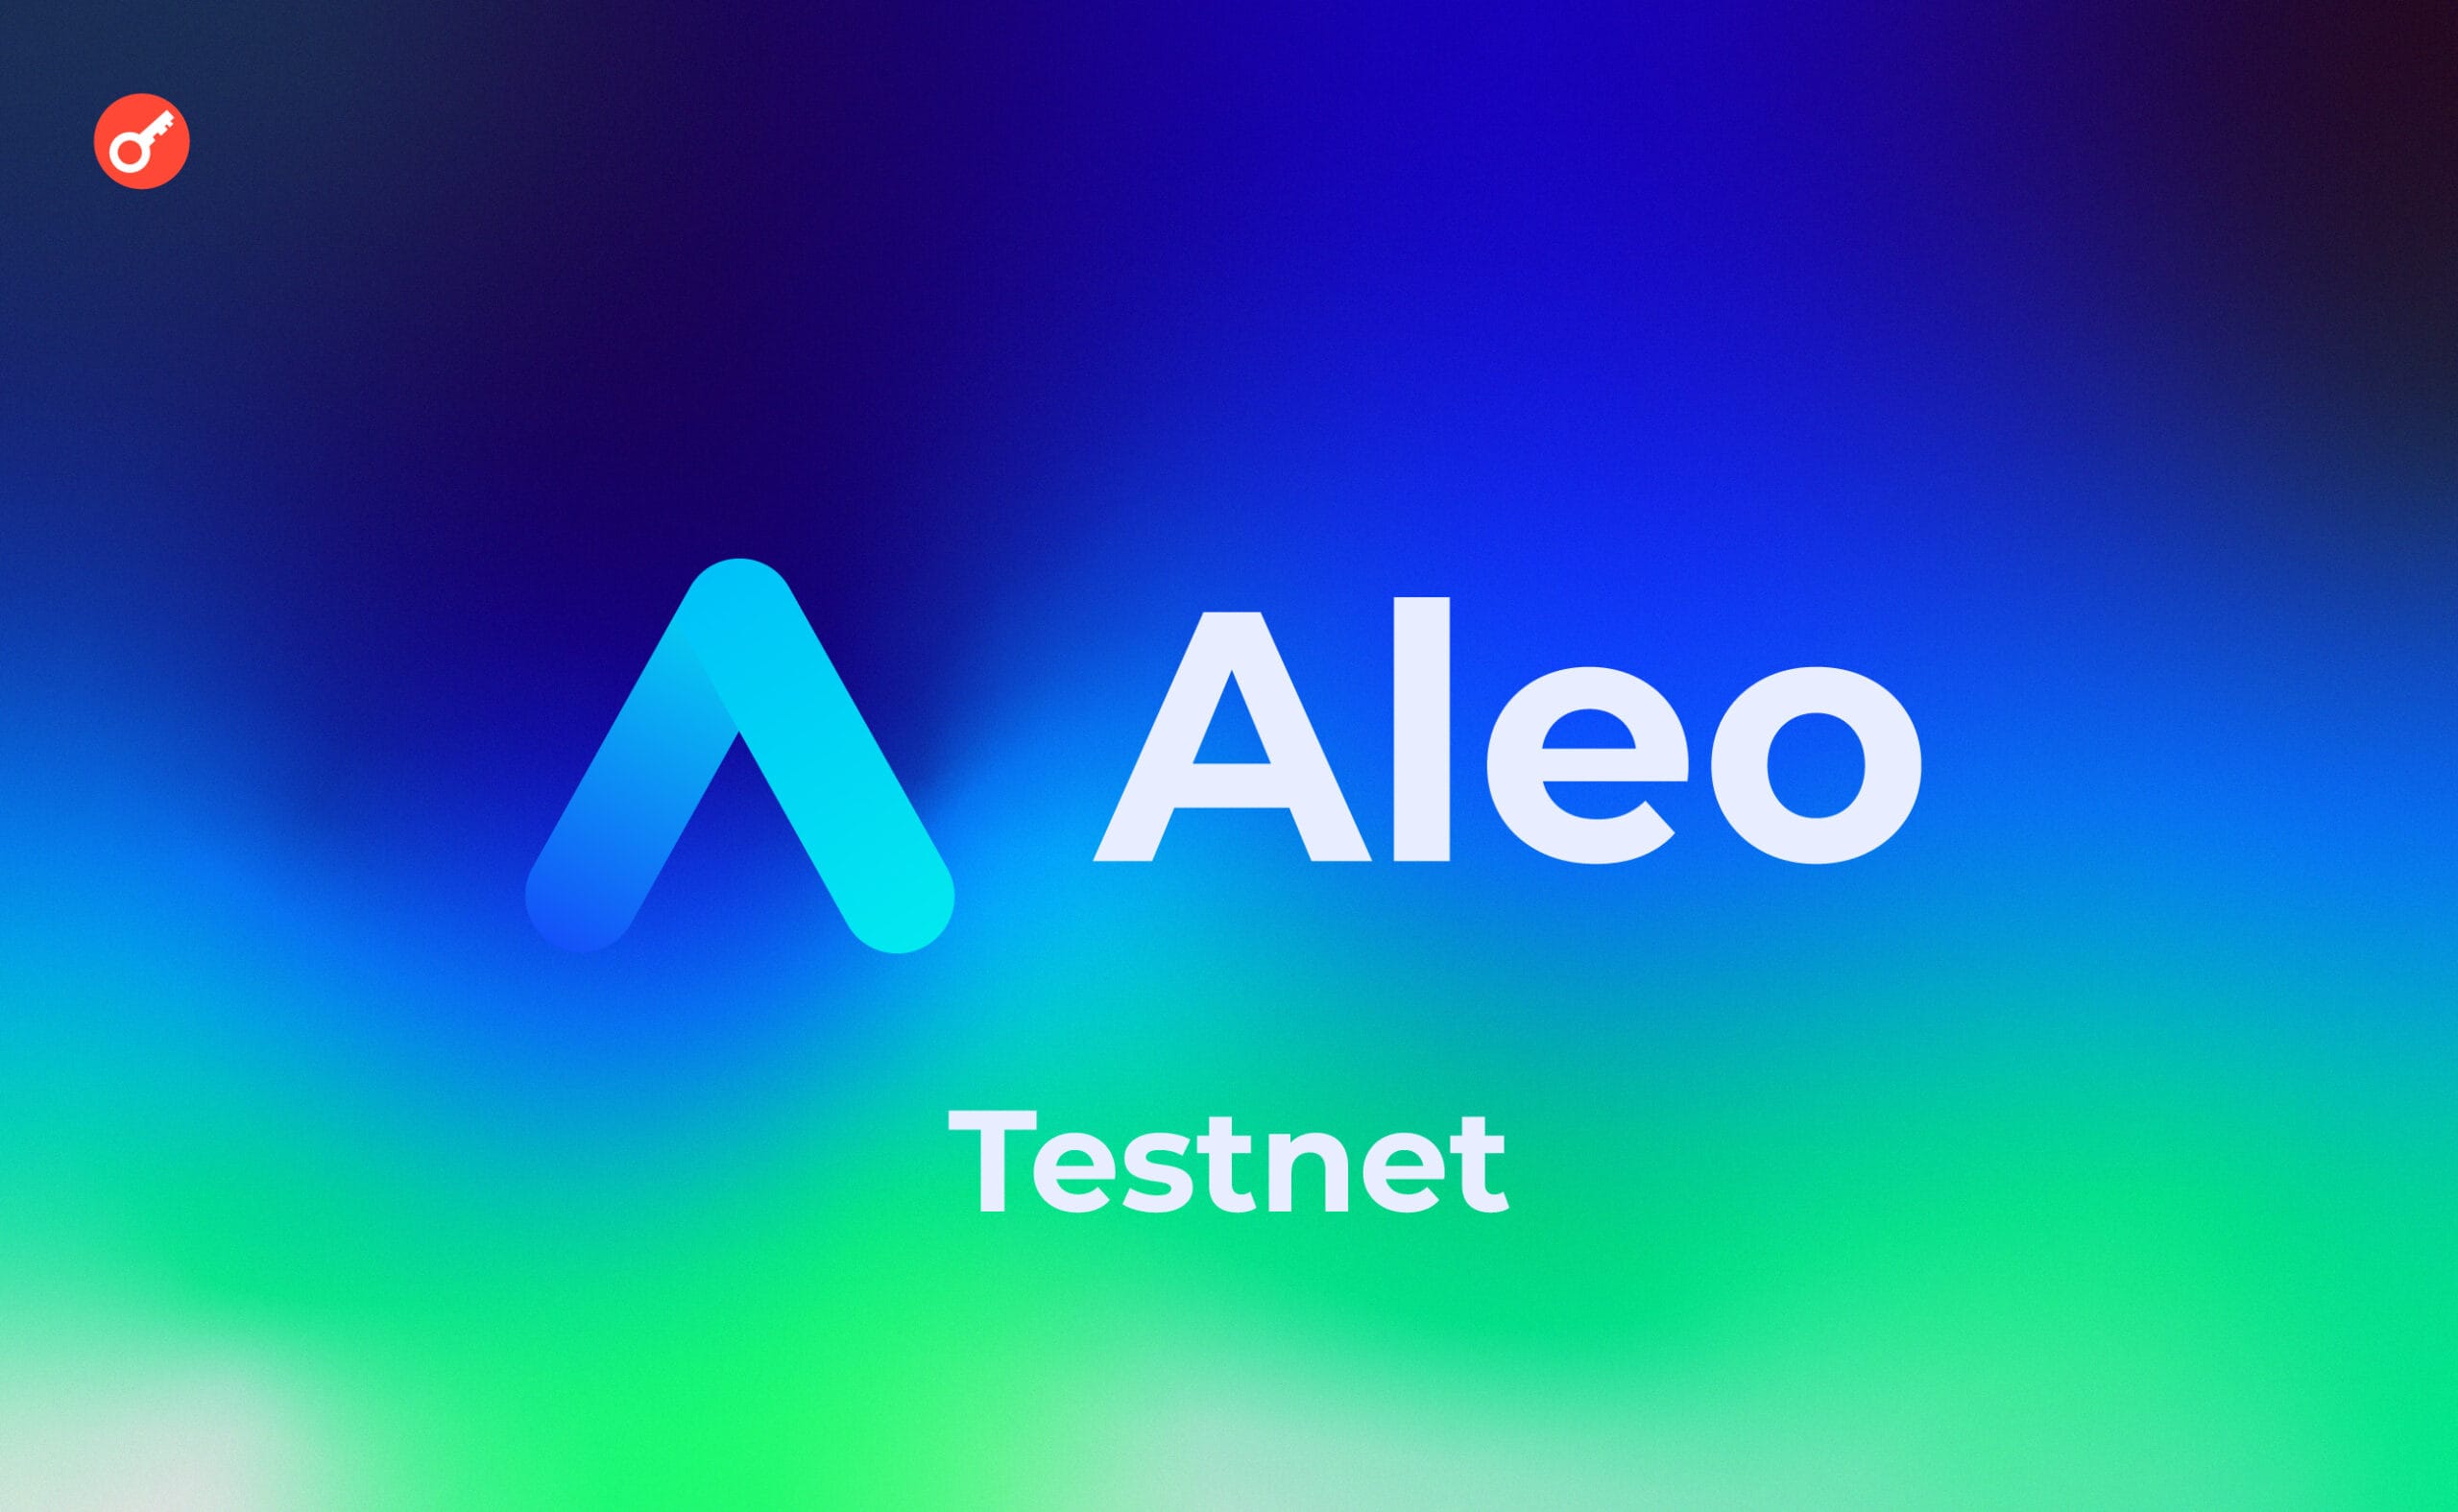 Aleo: Награждаемый тестнет для опытных разработчиков. Заглавный коллаж статьи.